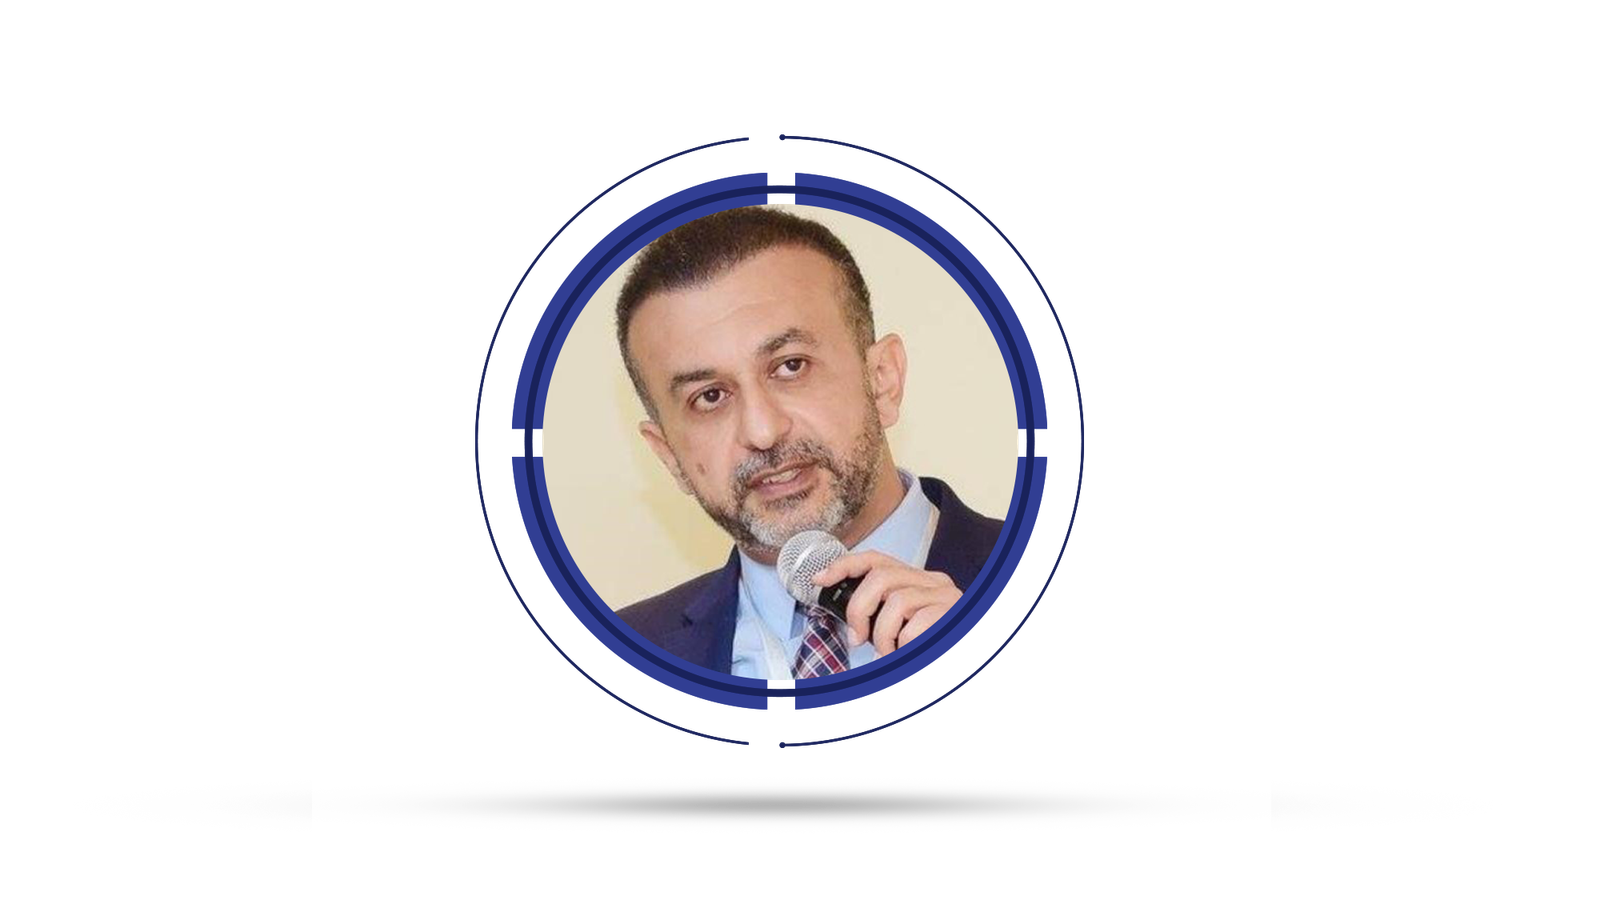 Dr. Tarek El Dessouky